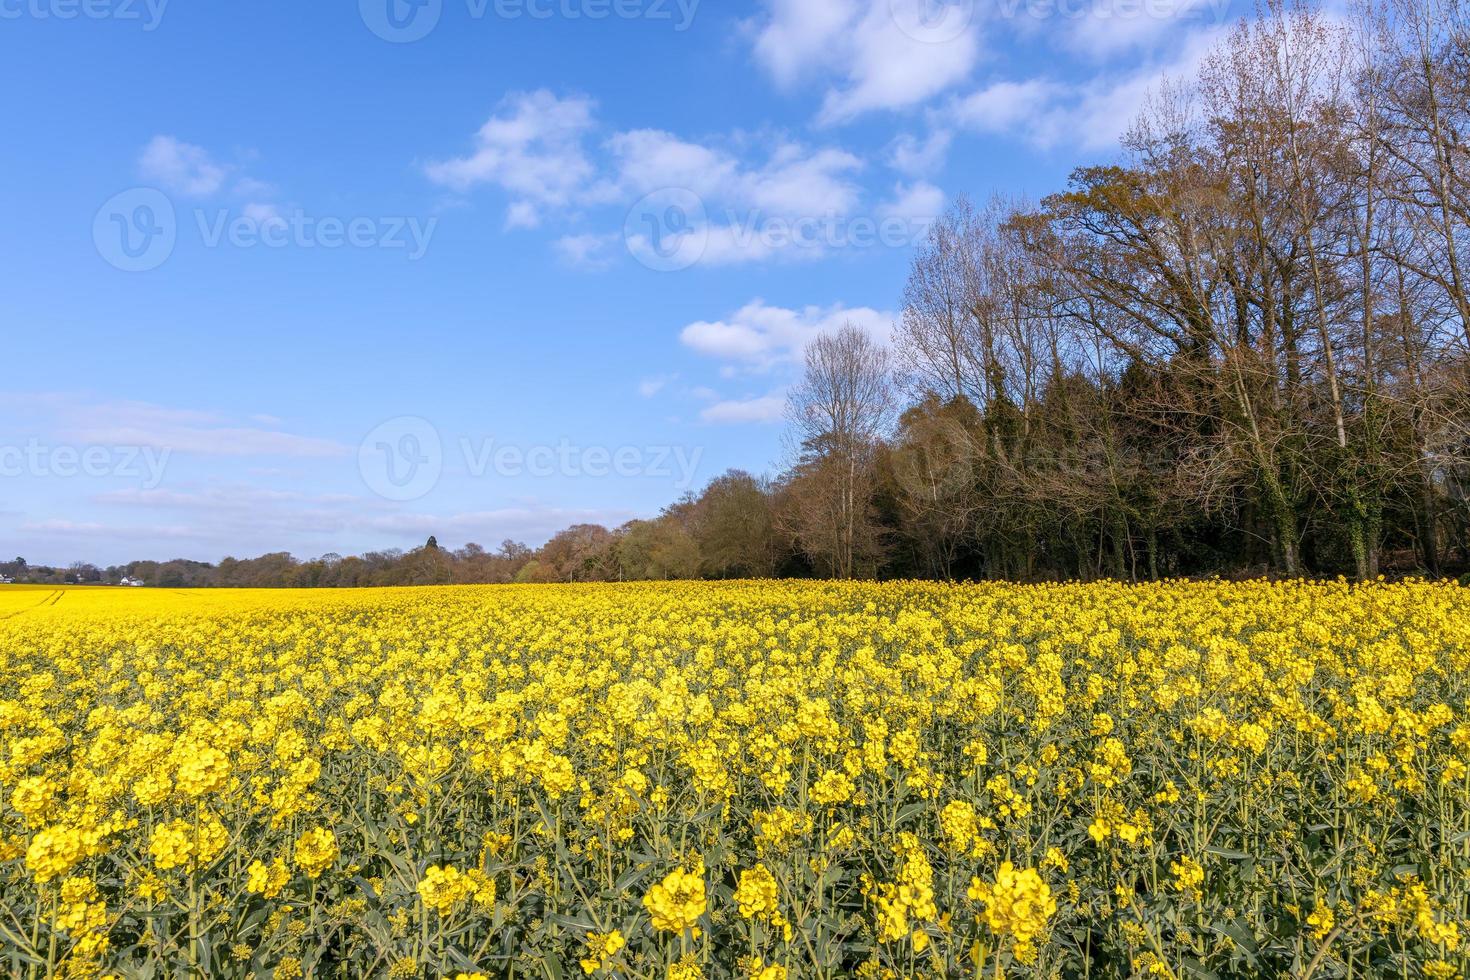 koolzaad bloeit op het platteland van East Sussex in de buurt van berkenbos foto